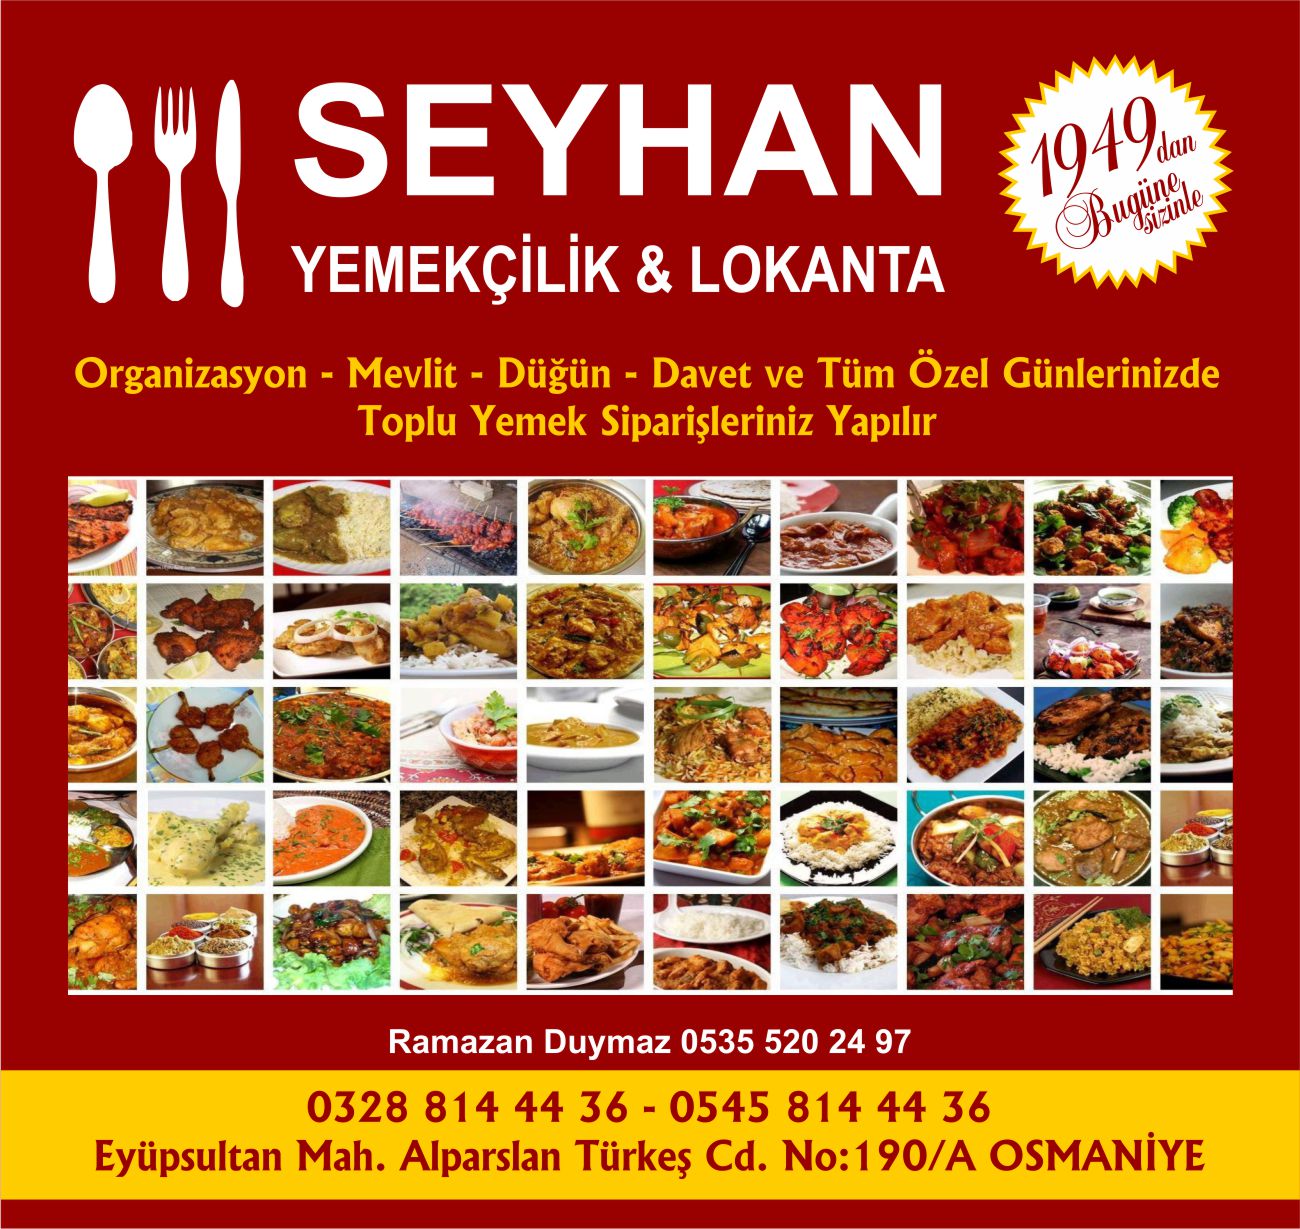 seyhan-yemekcilik-osmaniye